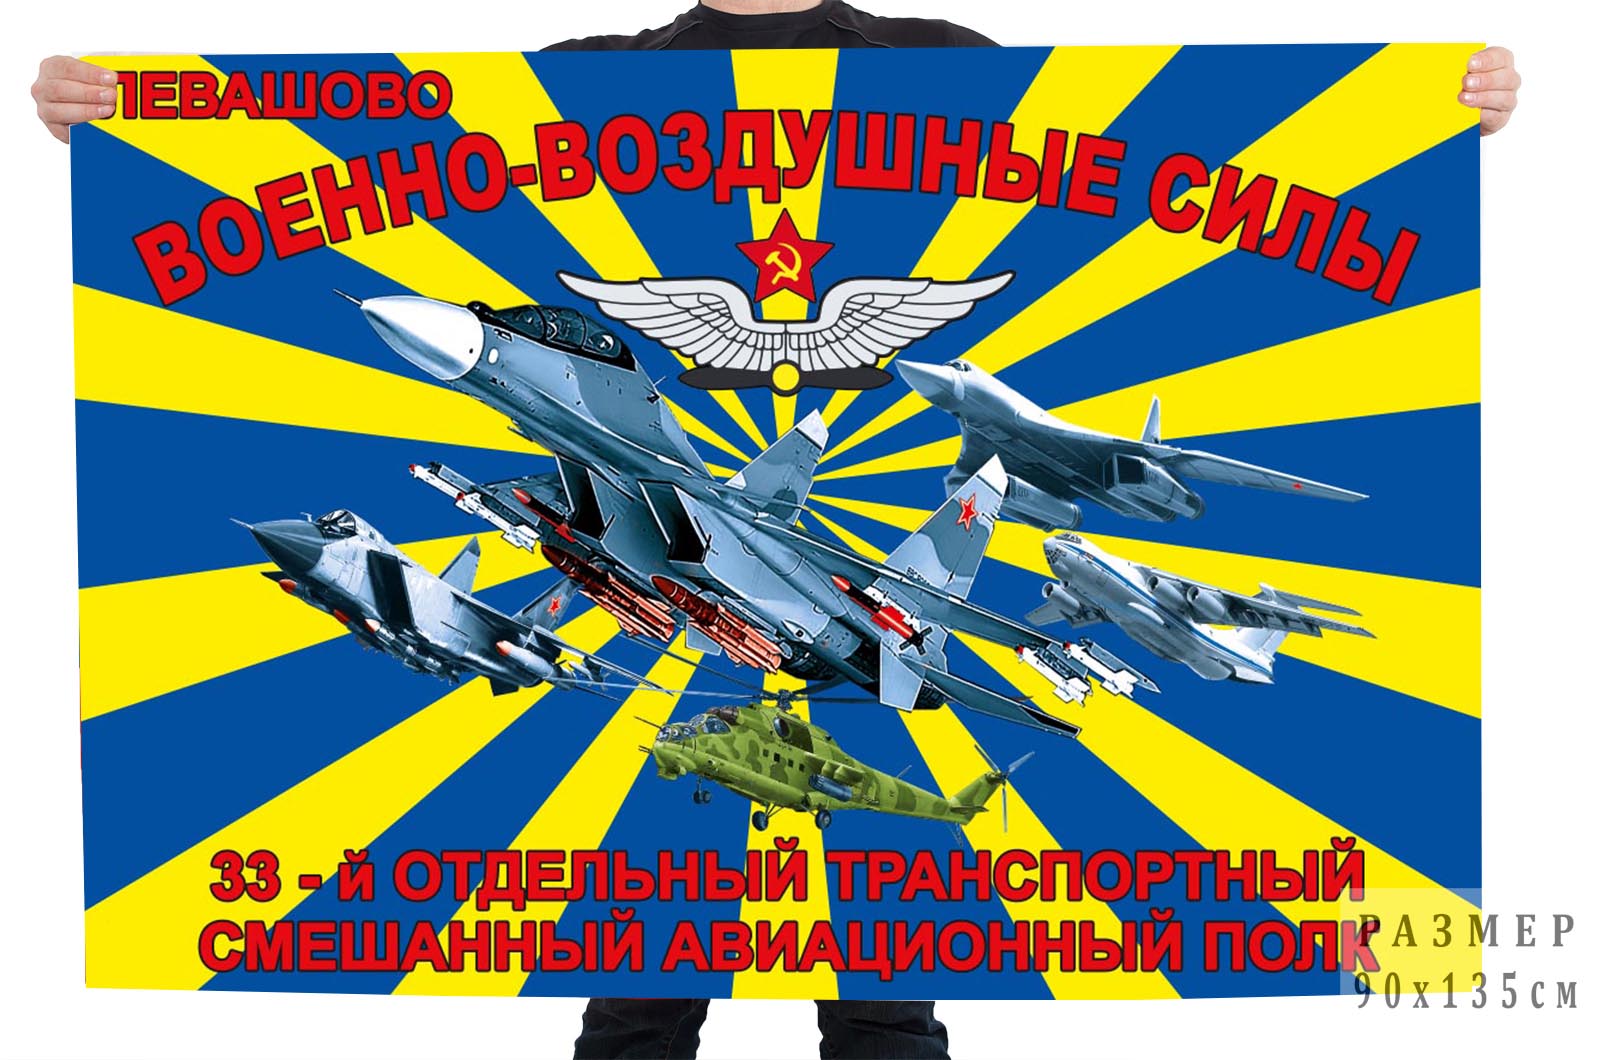 Купить в Москве флаг 33 отдельный транспортный смешанный авиационный полк ВВС